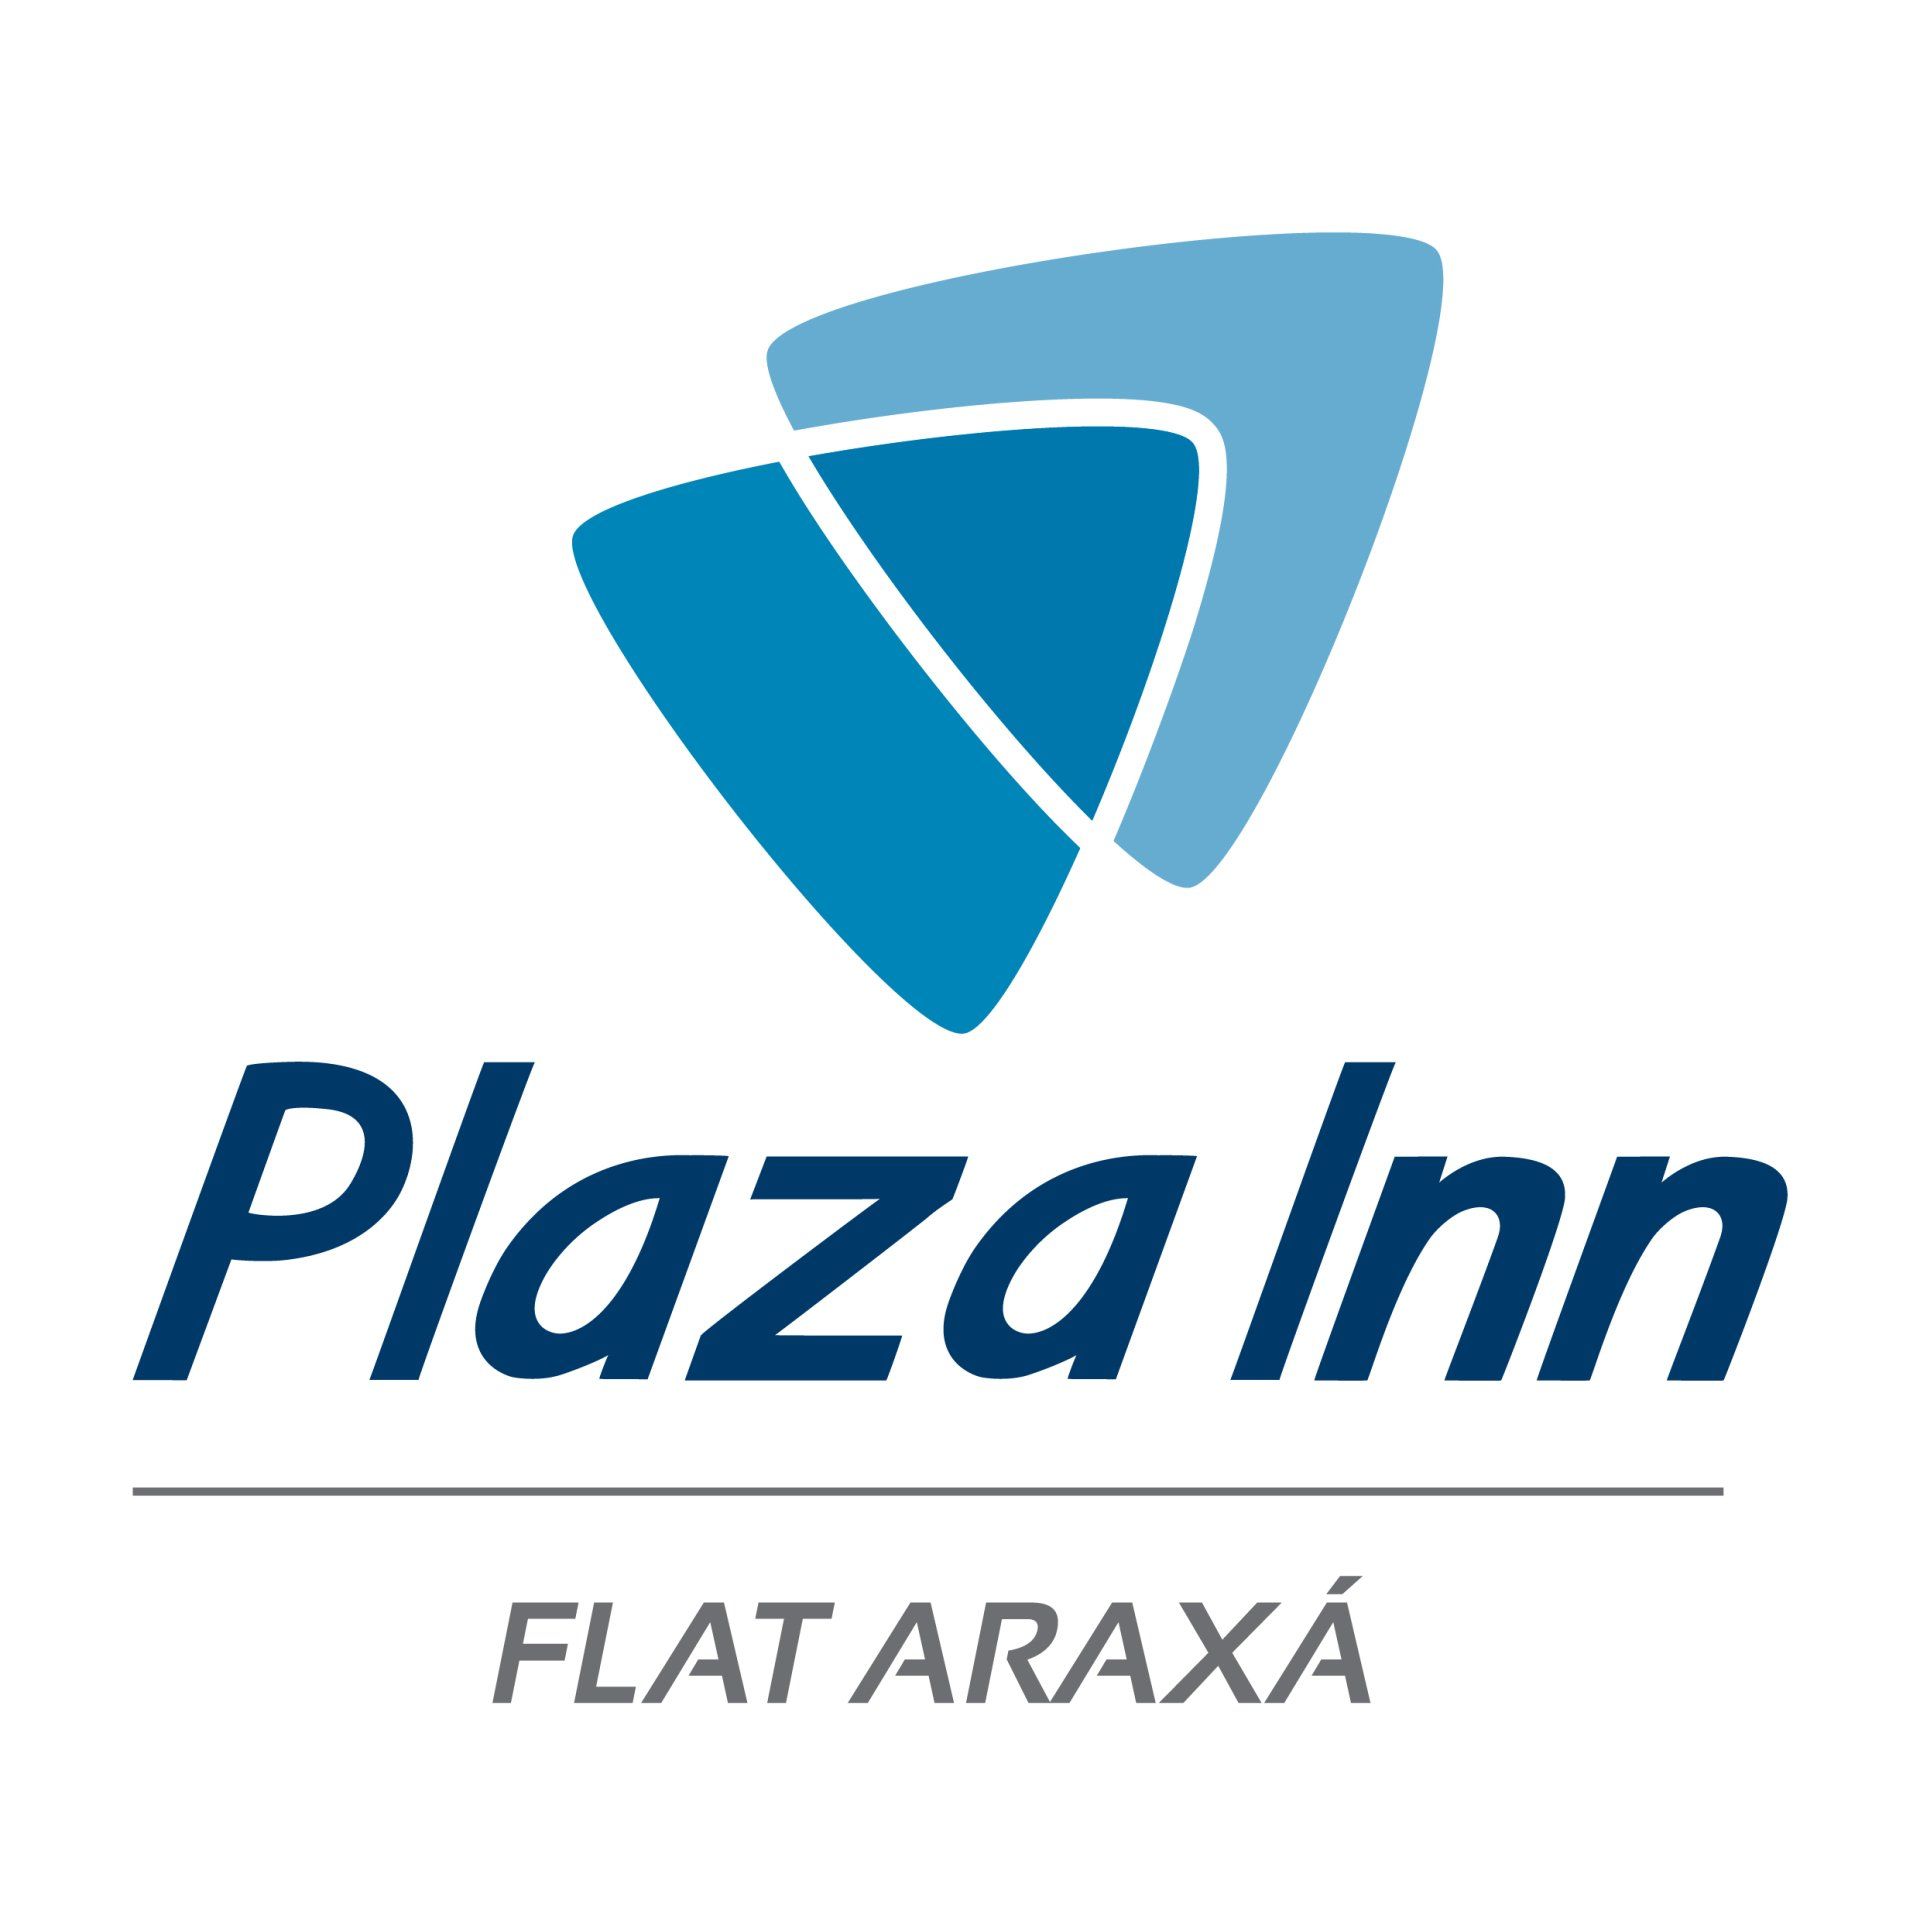 Plaza Inn Araxá